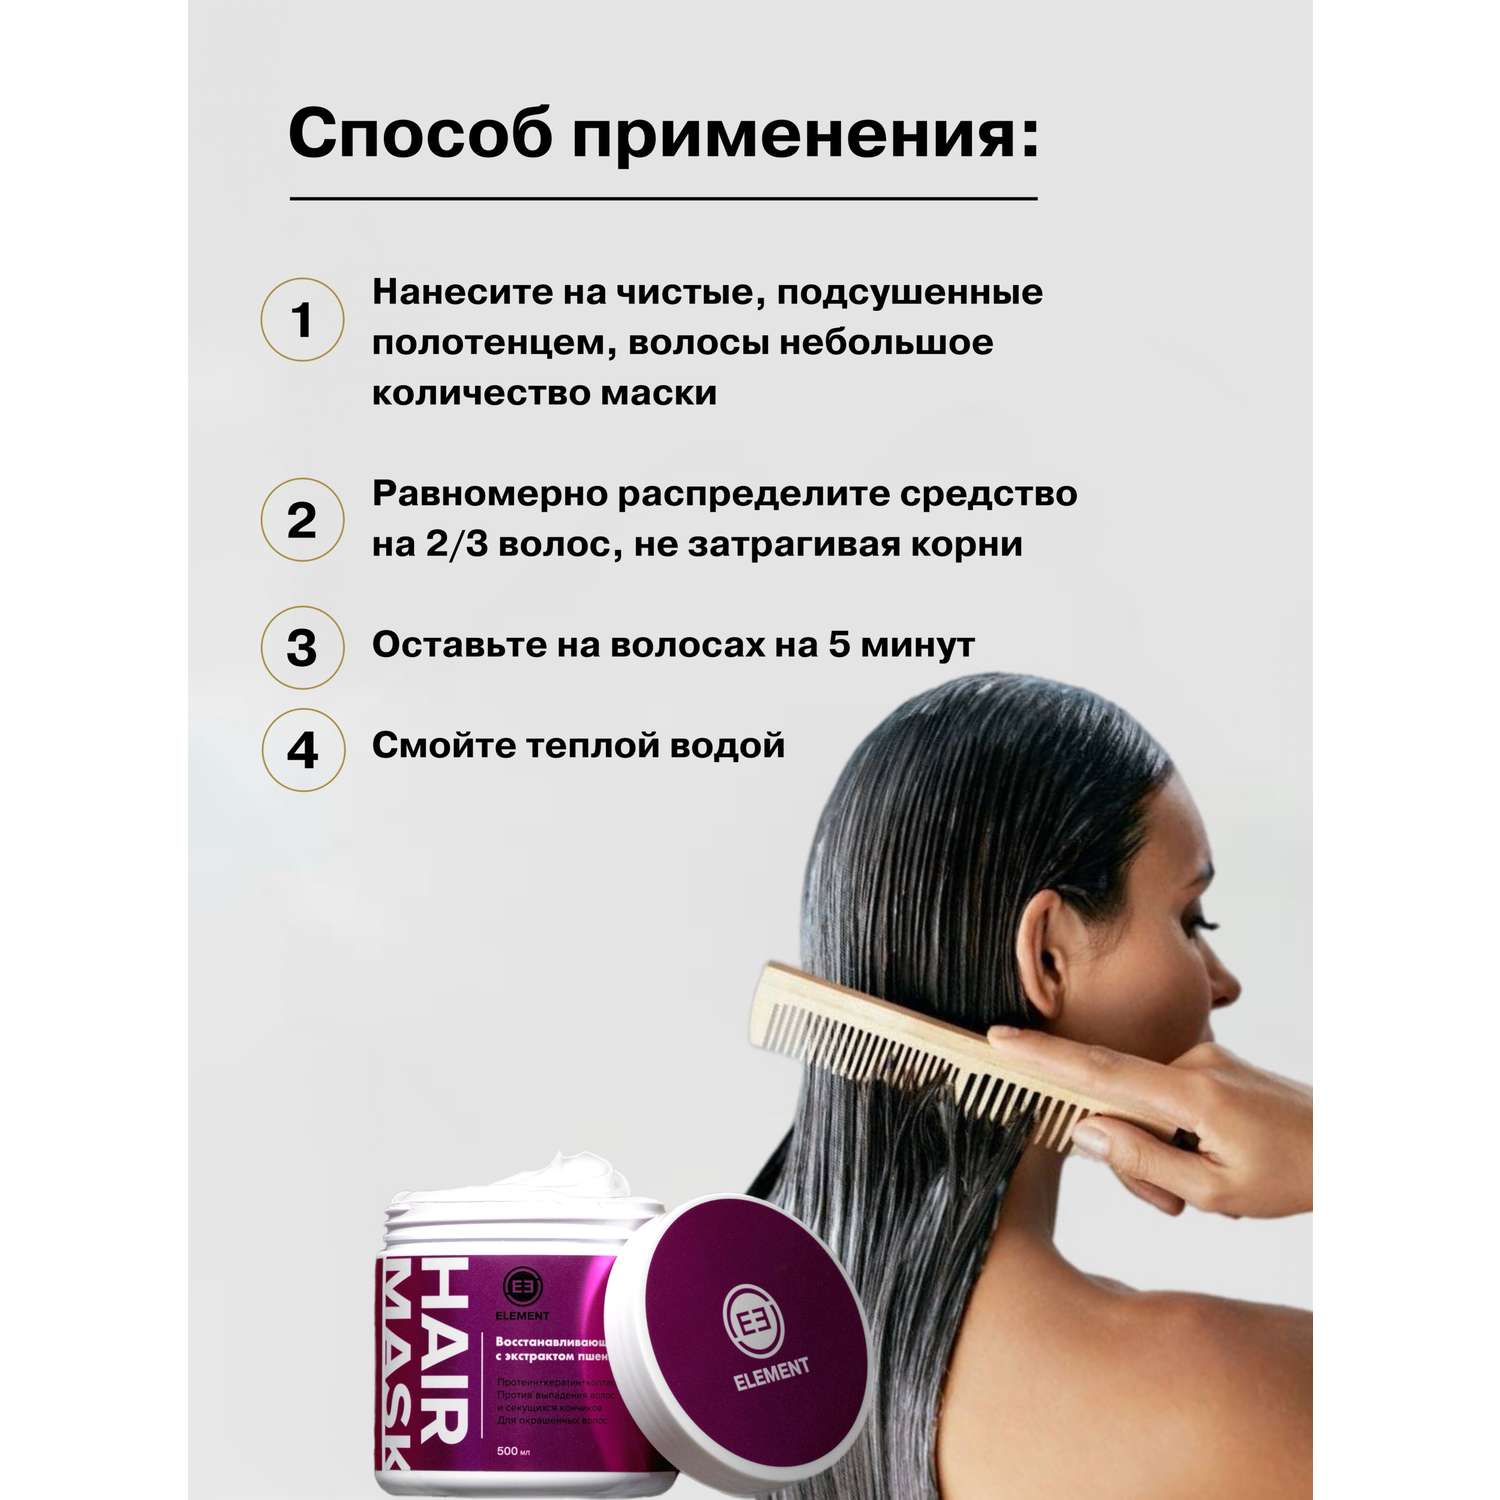 Маска для волос ELEMENT Восстанавливающая с экстрактом пшеницы для вьющихся волос500 мл Корея - фото 2